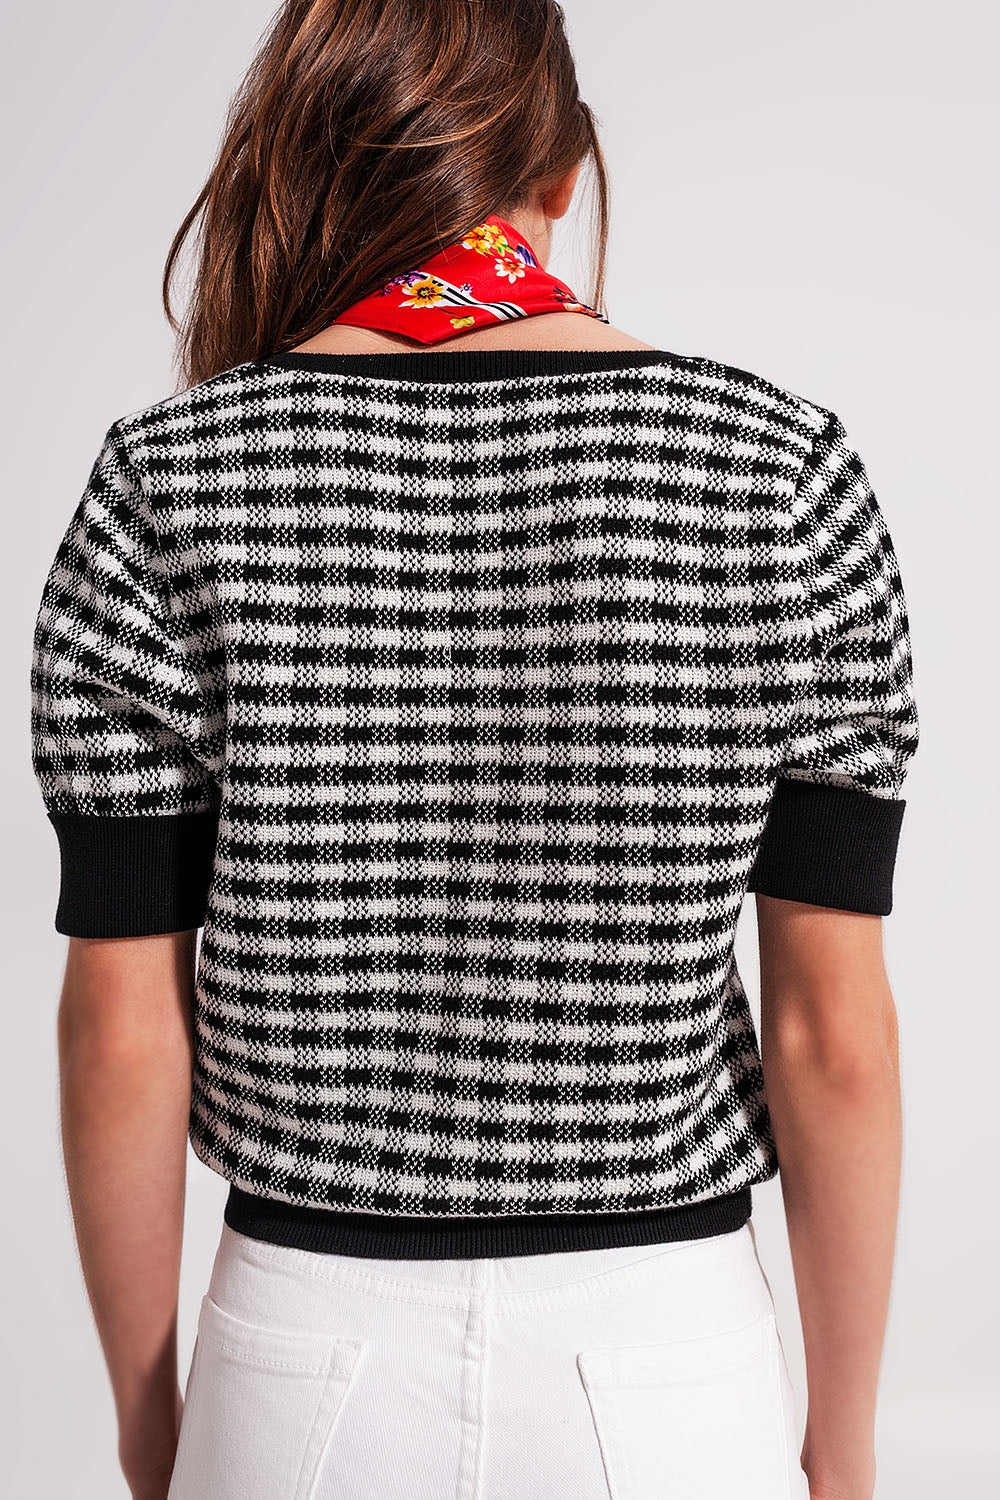 Square neck jumper in black and white Szua Store